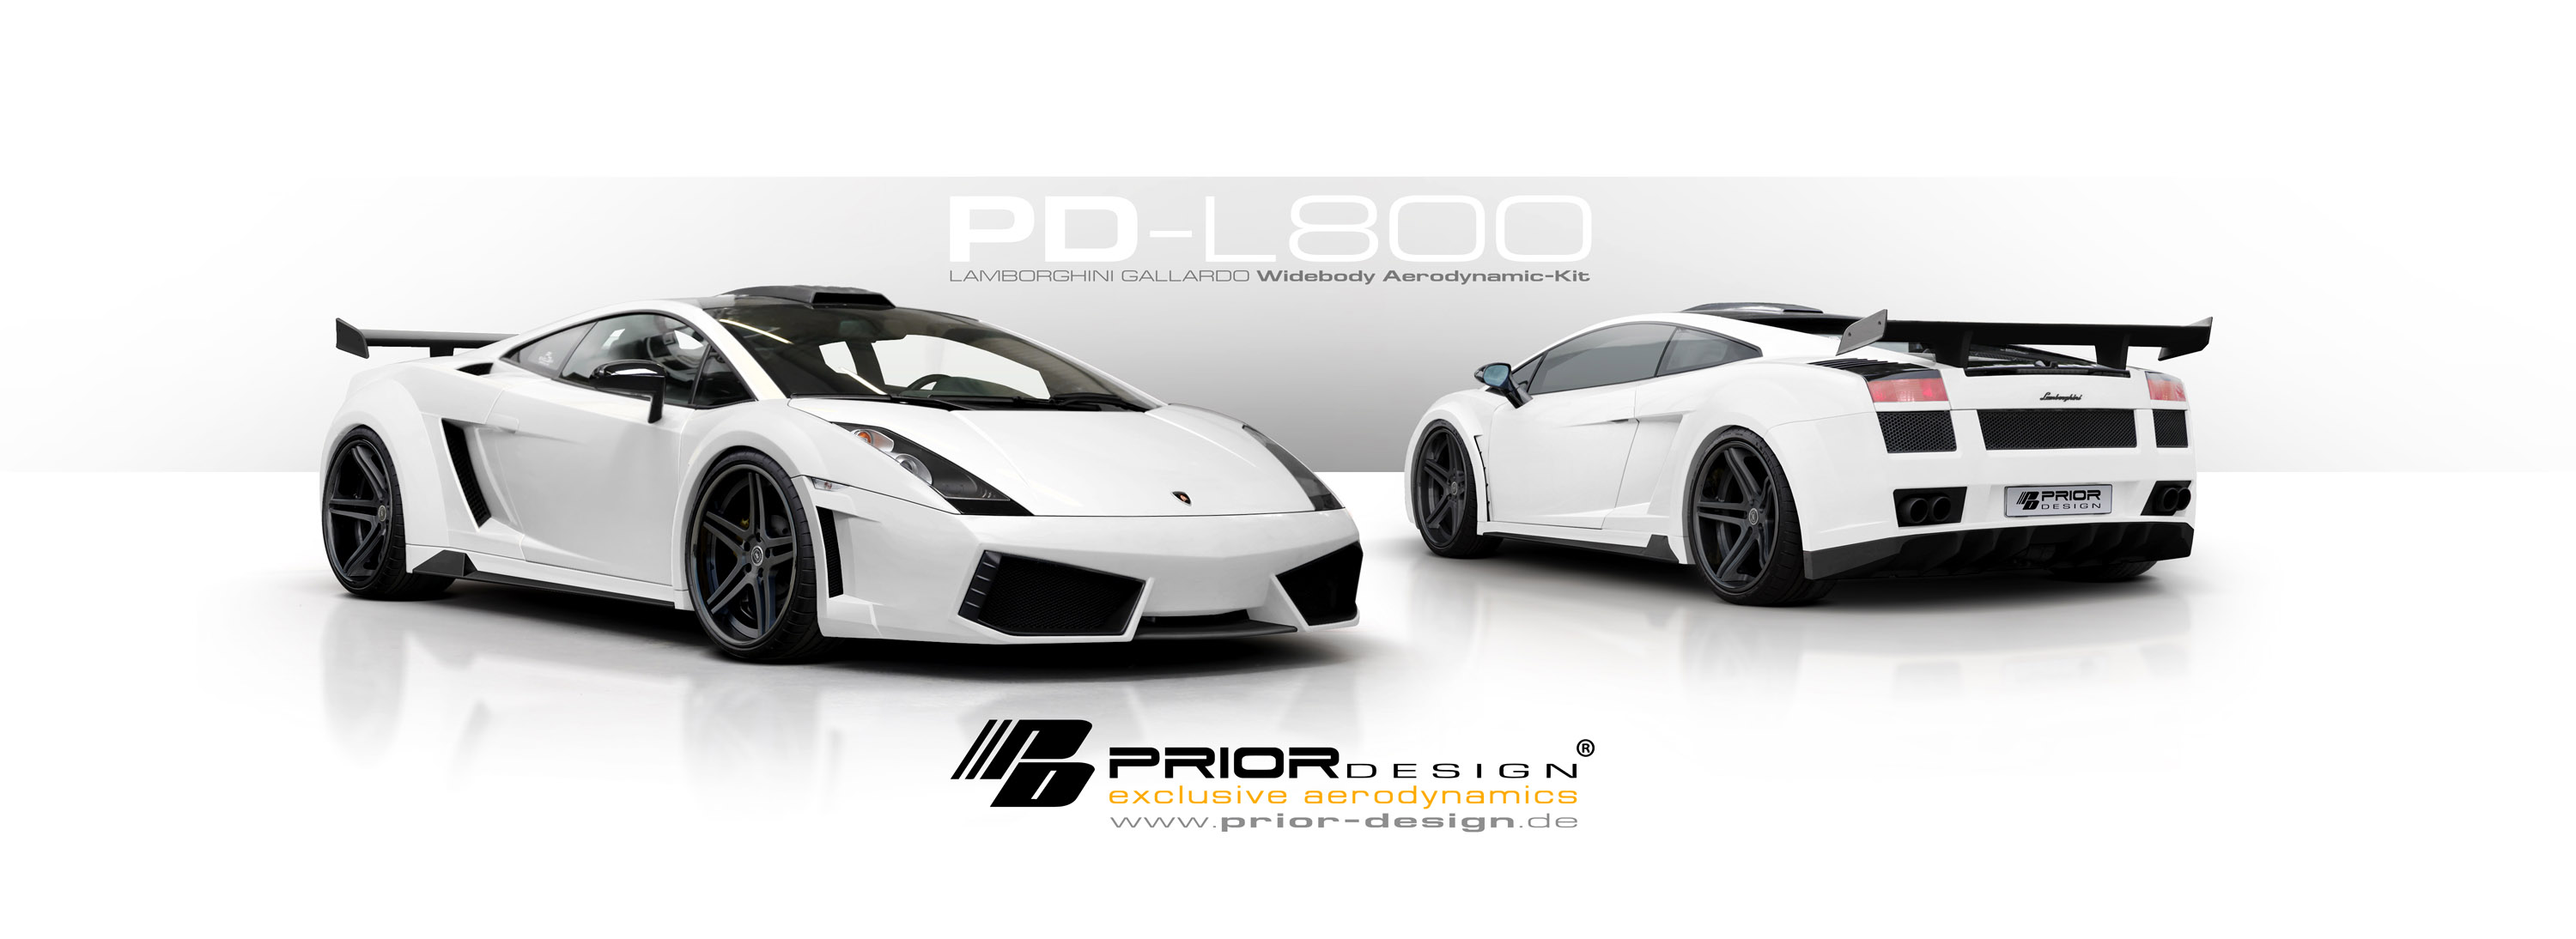 Prior Design L800 Lamborghini Gallardo